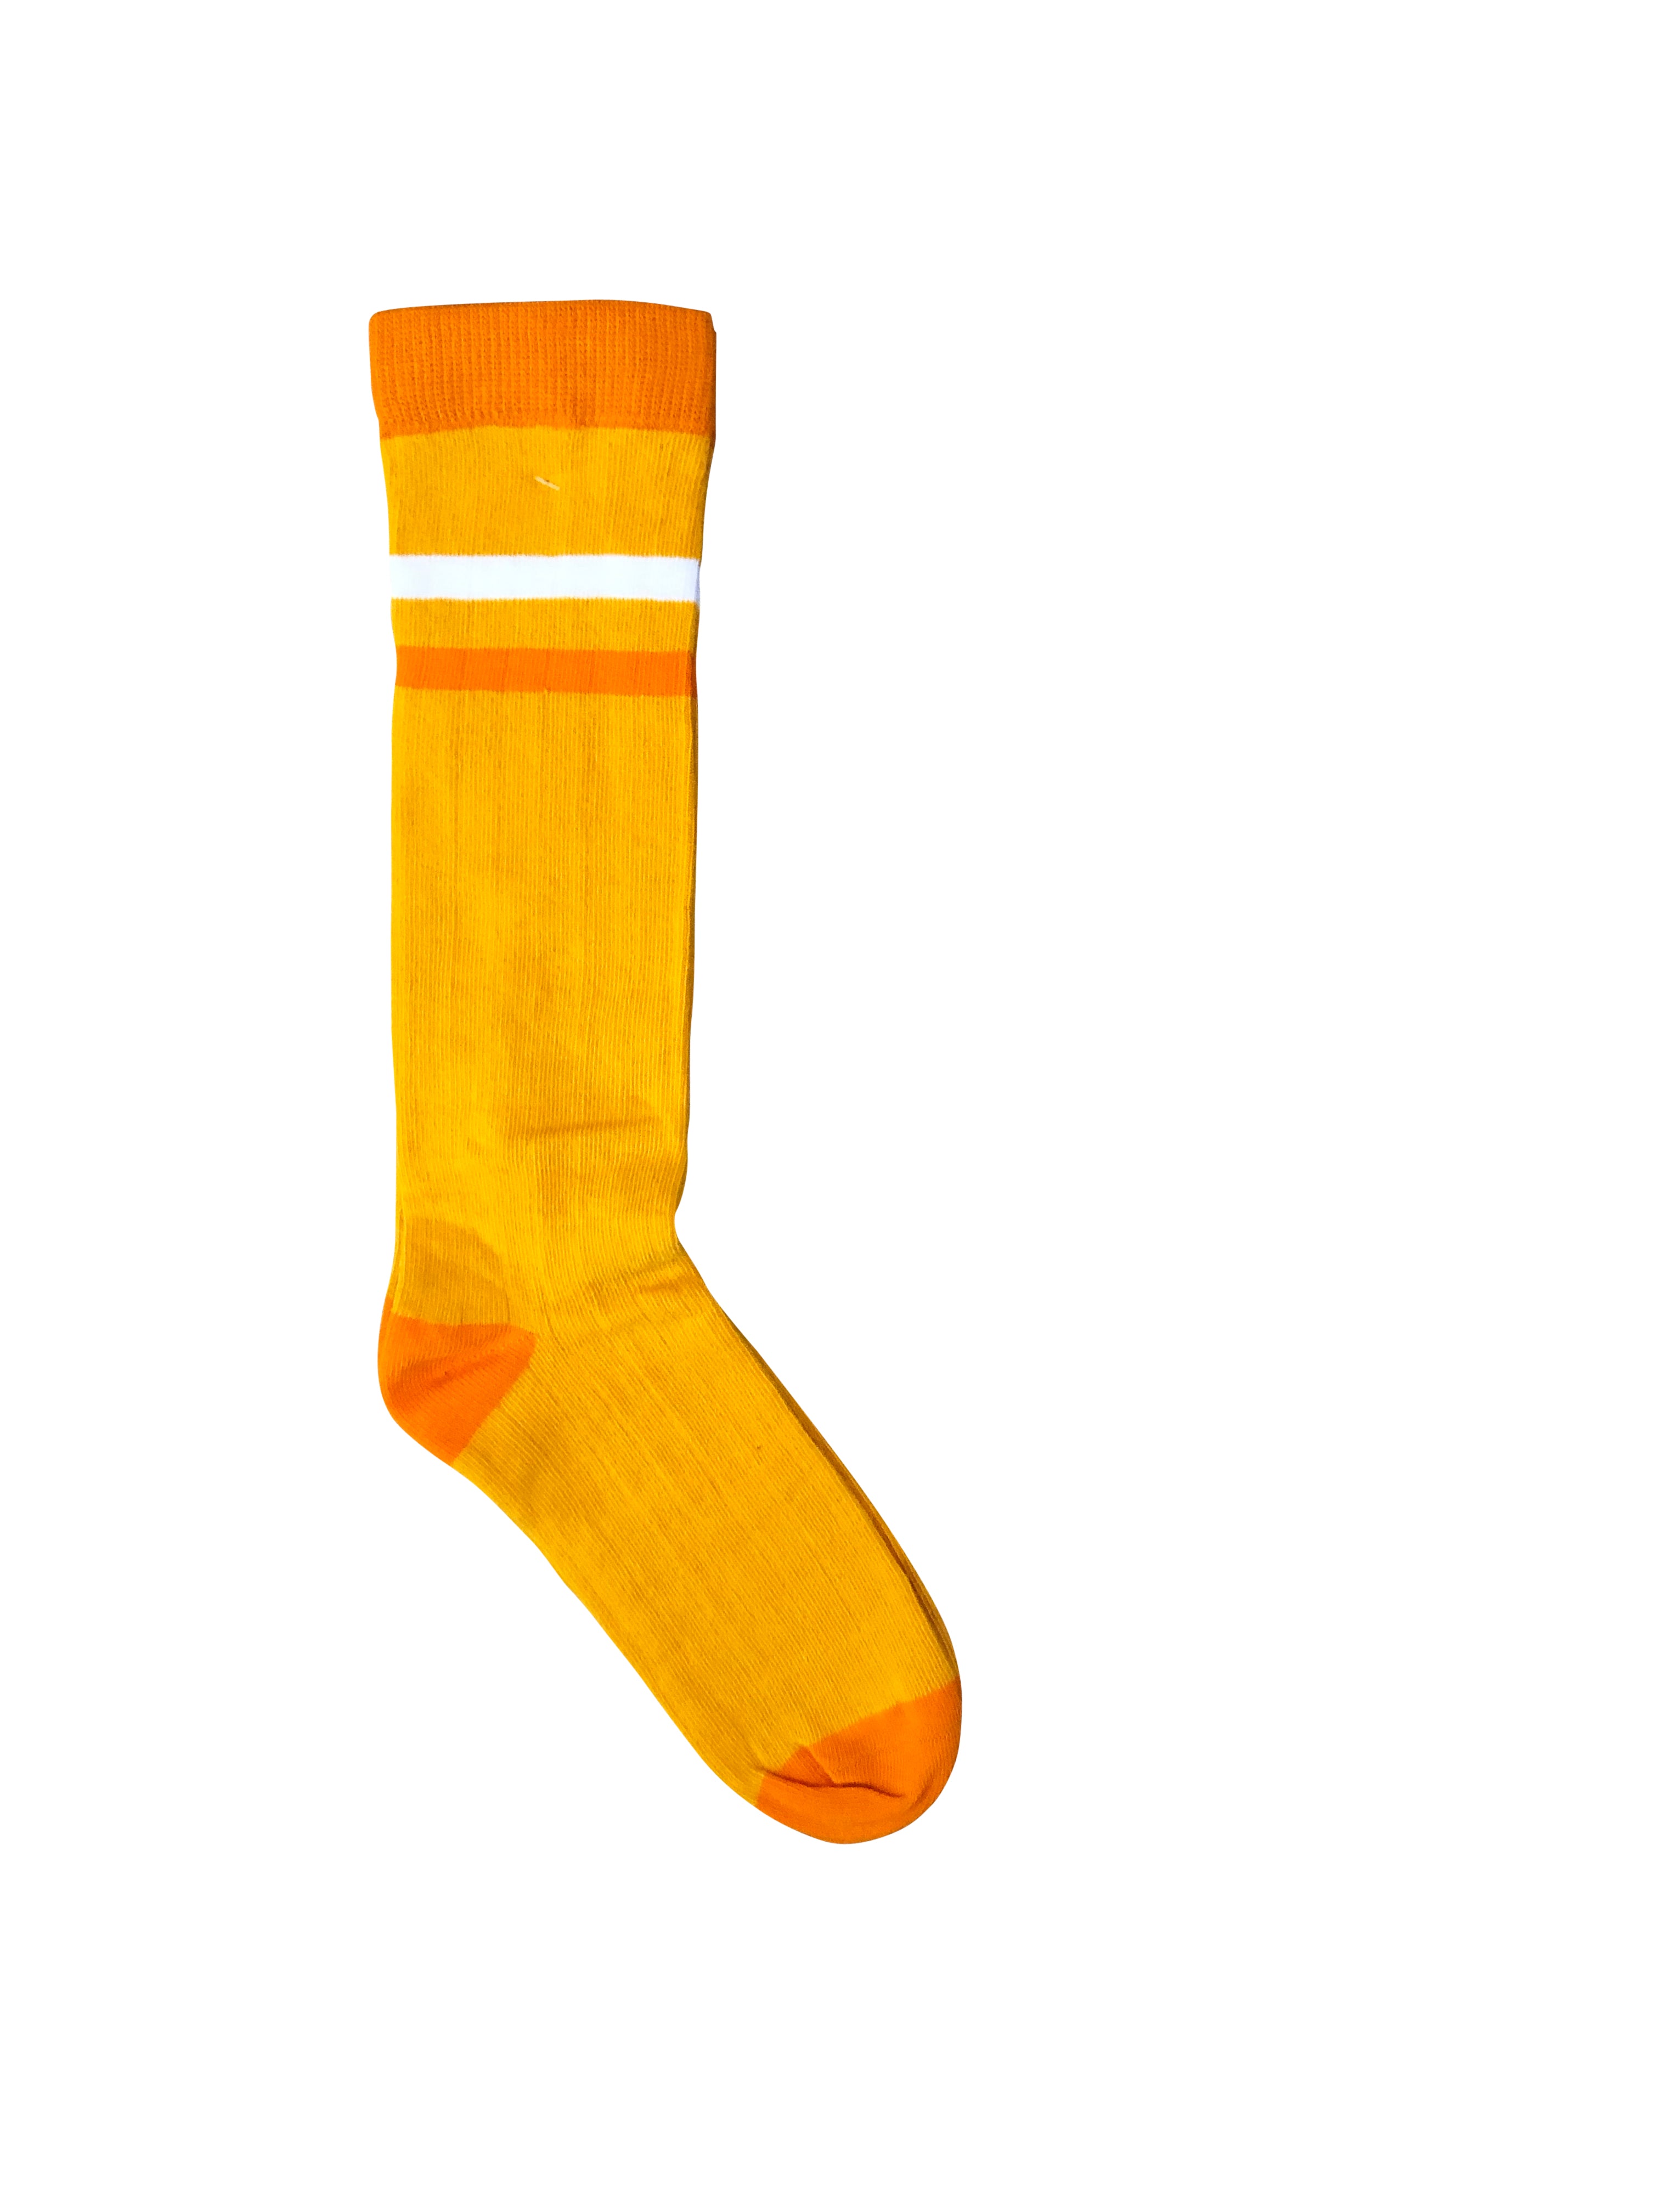 Moromini - Ribbed Tube Socks - Yellow